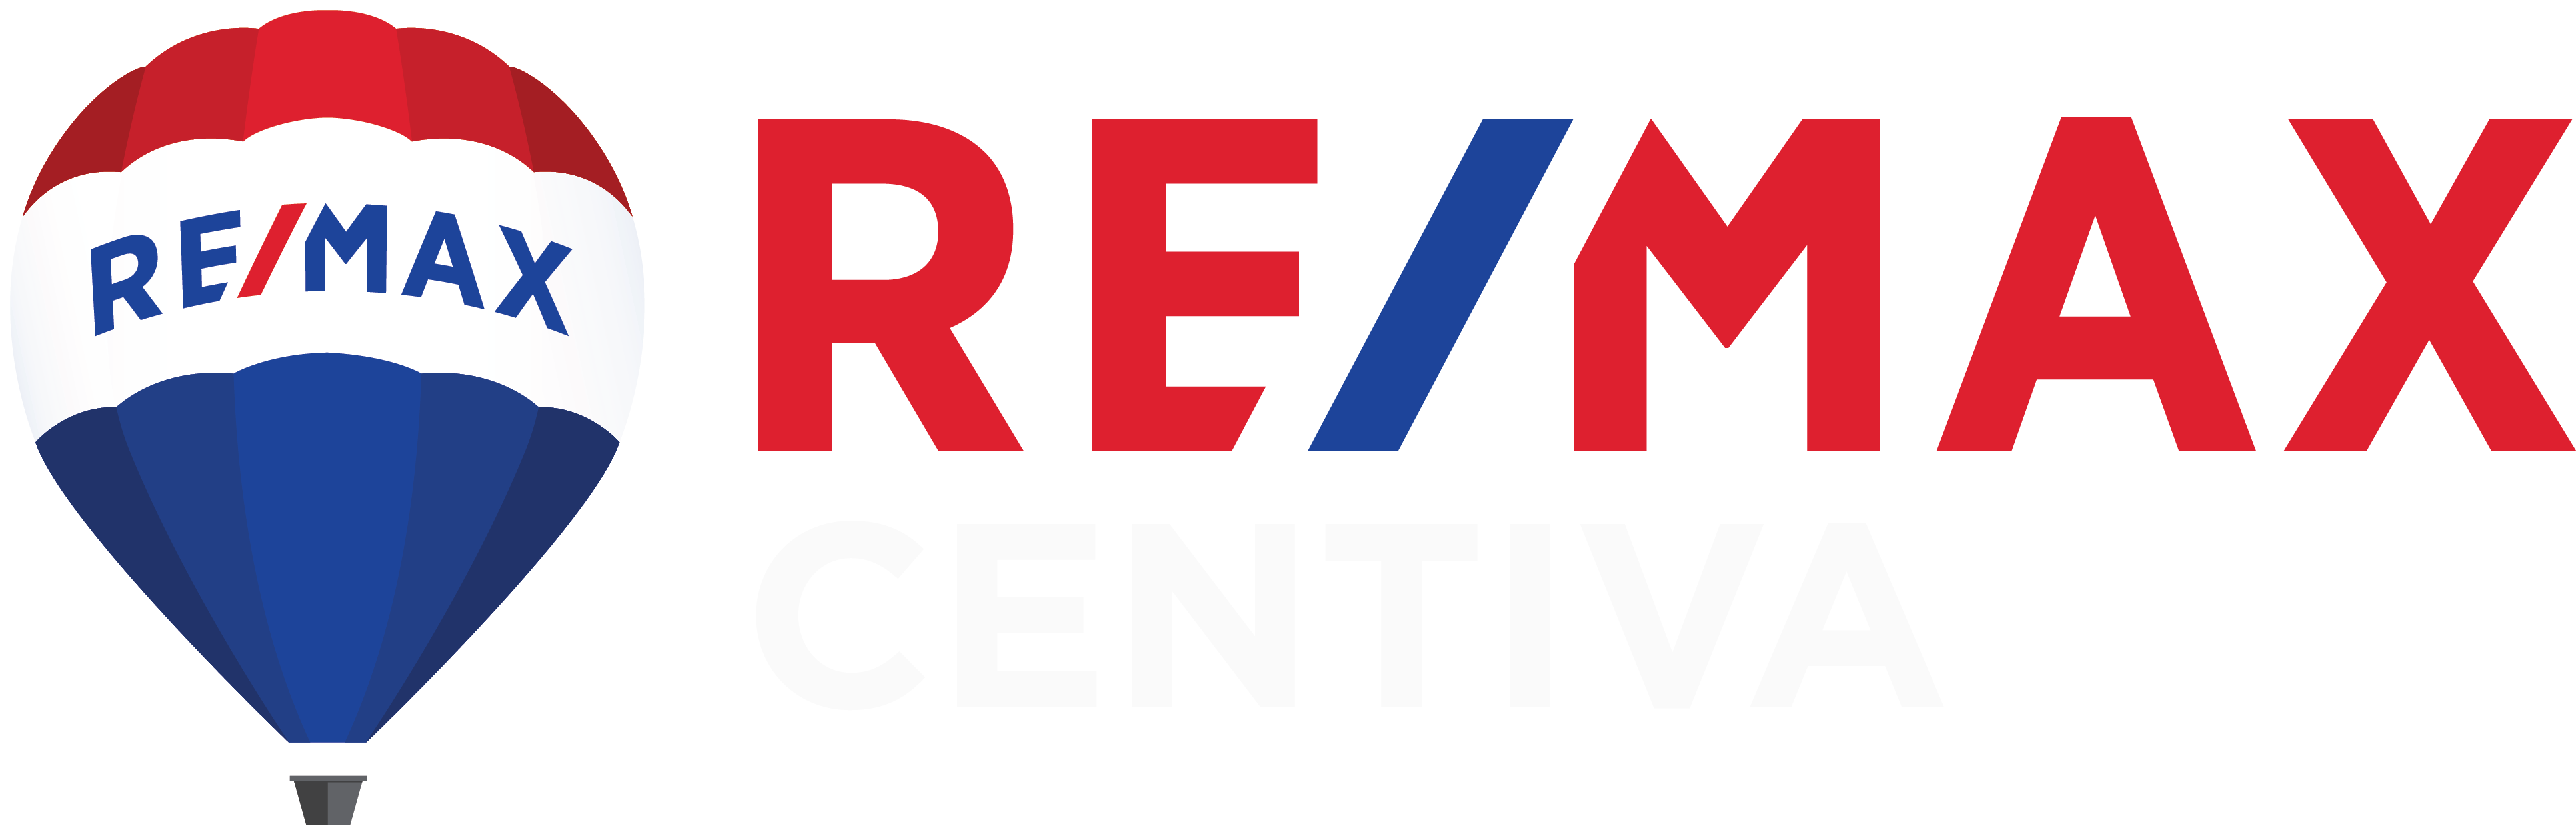 RE/MAX Centiva